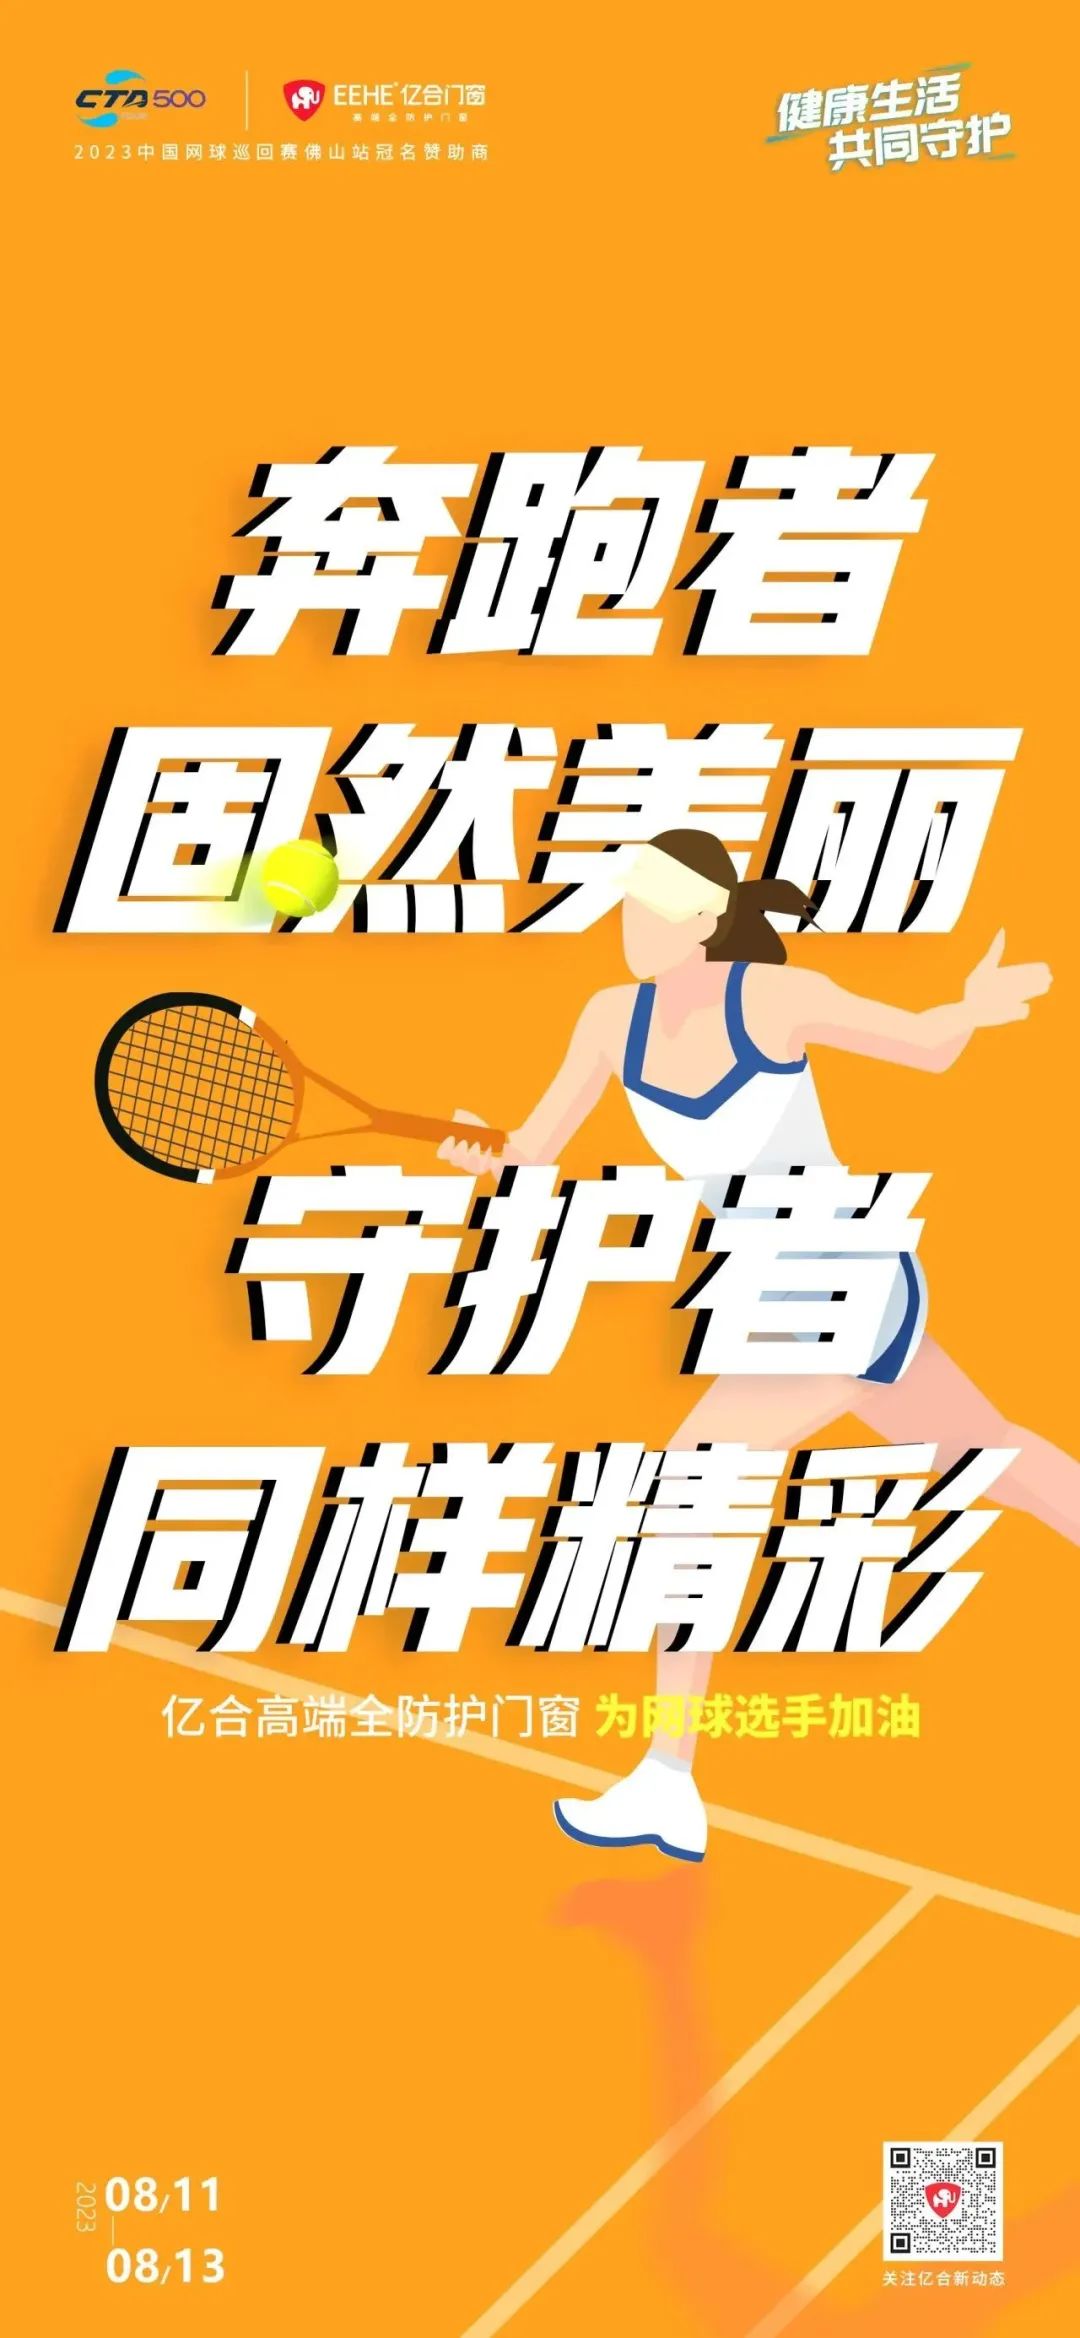 全民健身日 澳门新浦京665535com免费送网球赛门票 挥拍让生活燃起来！